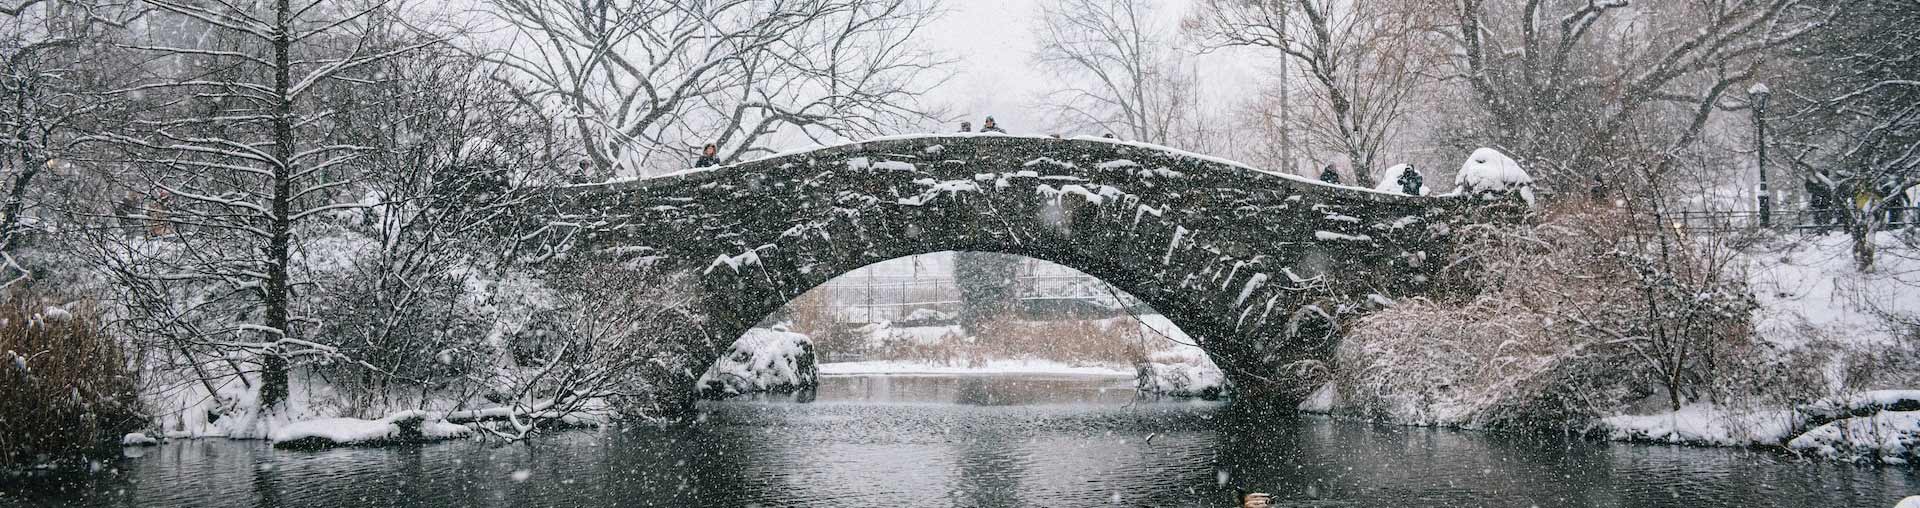 Central Park New York City innevato con ponte di pietra sullo sfondo